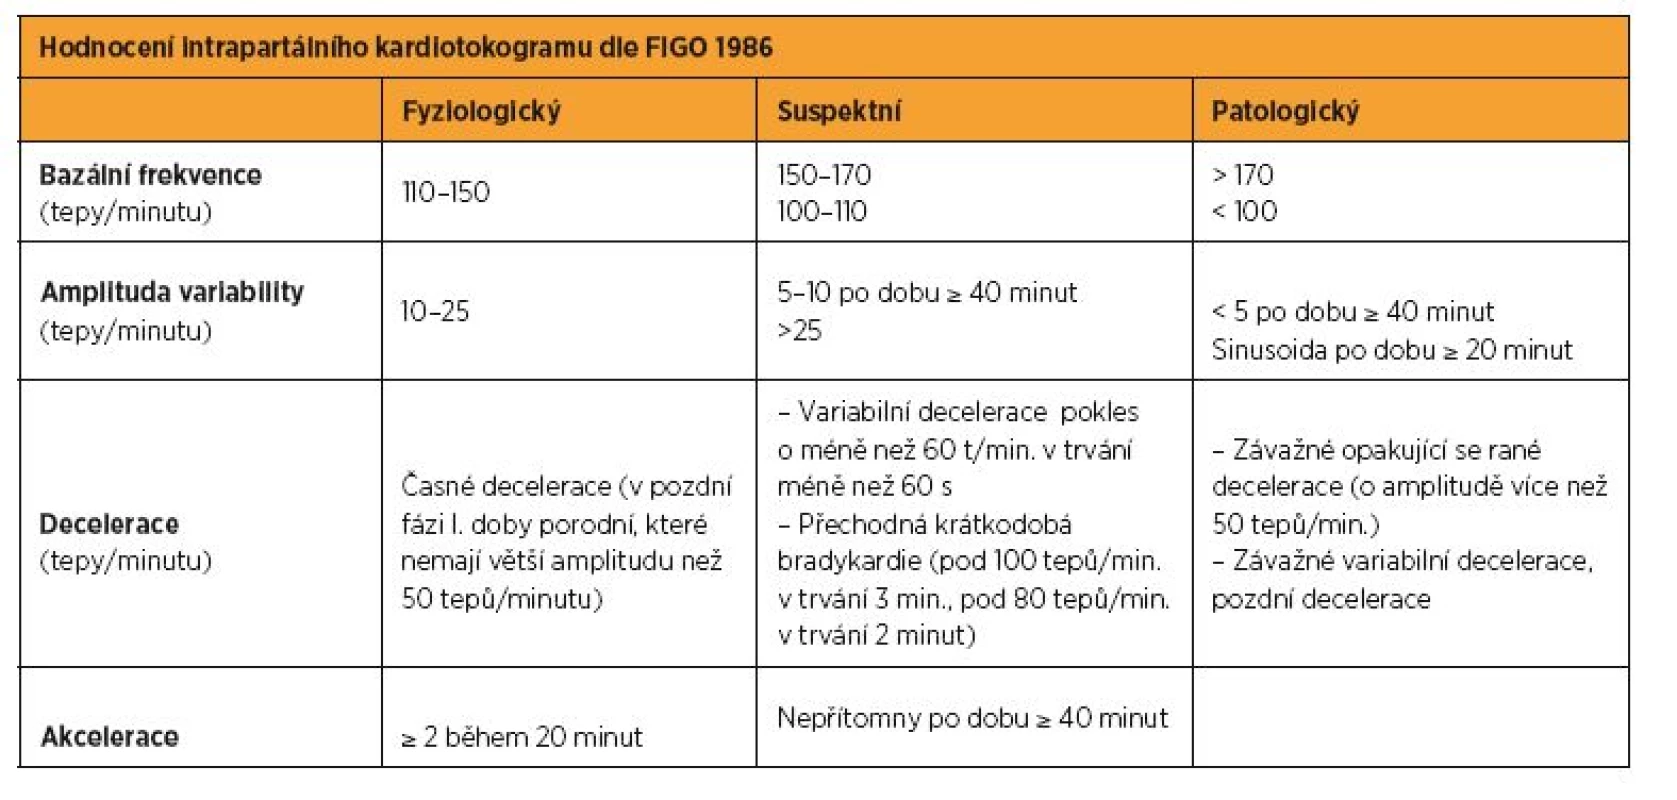 Hodnocení intrapartálního kardiotokogramu (FIGO 1986)